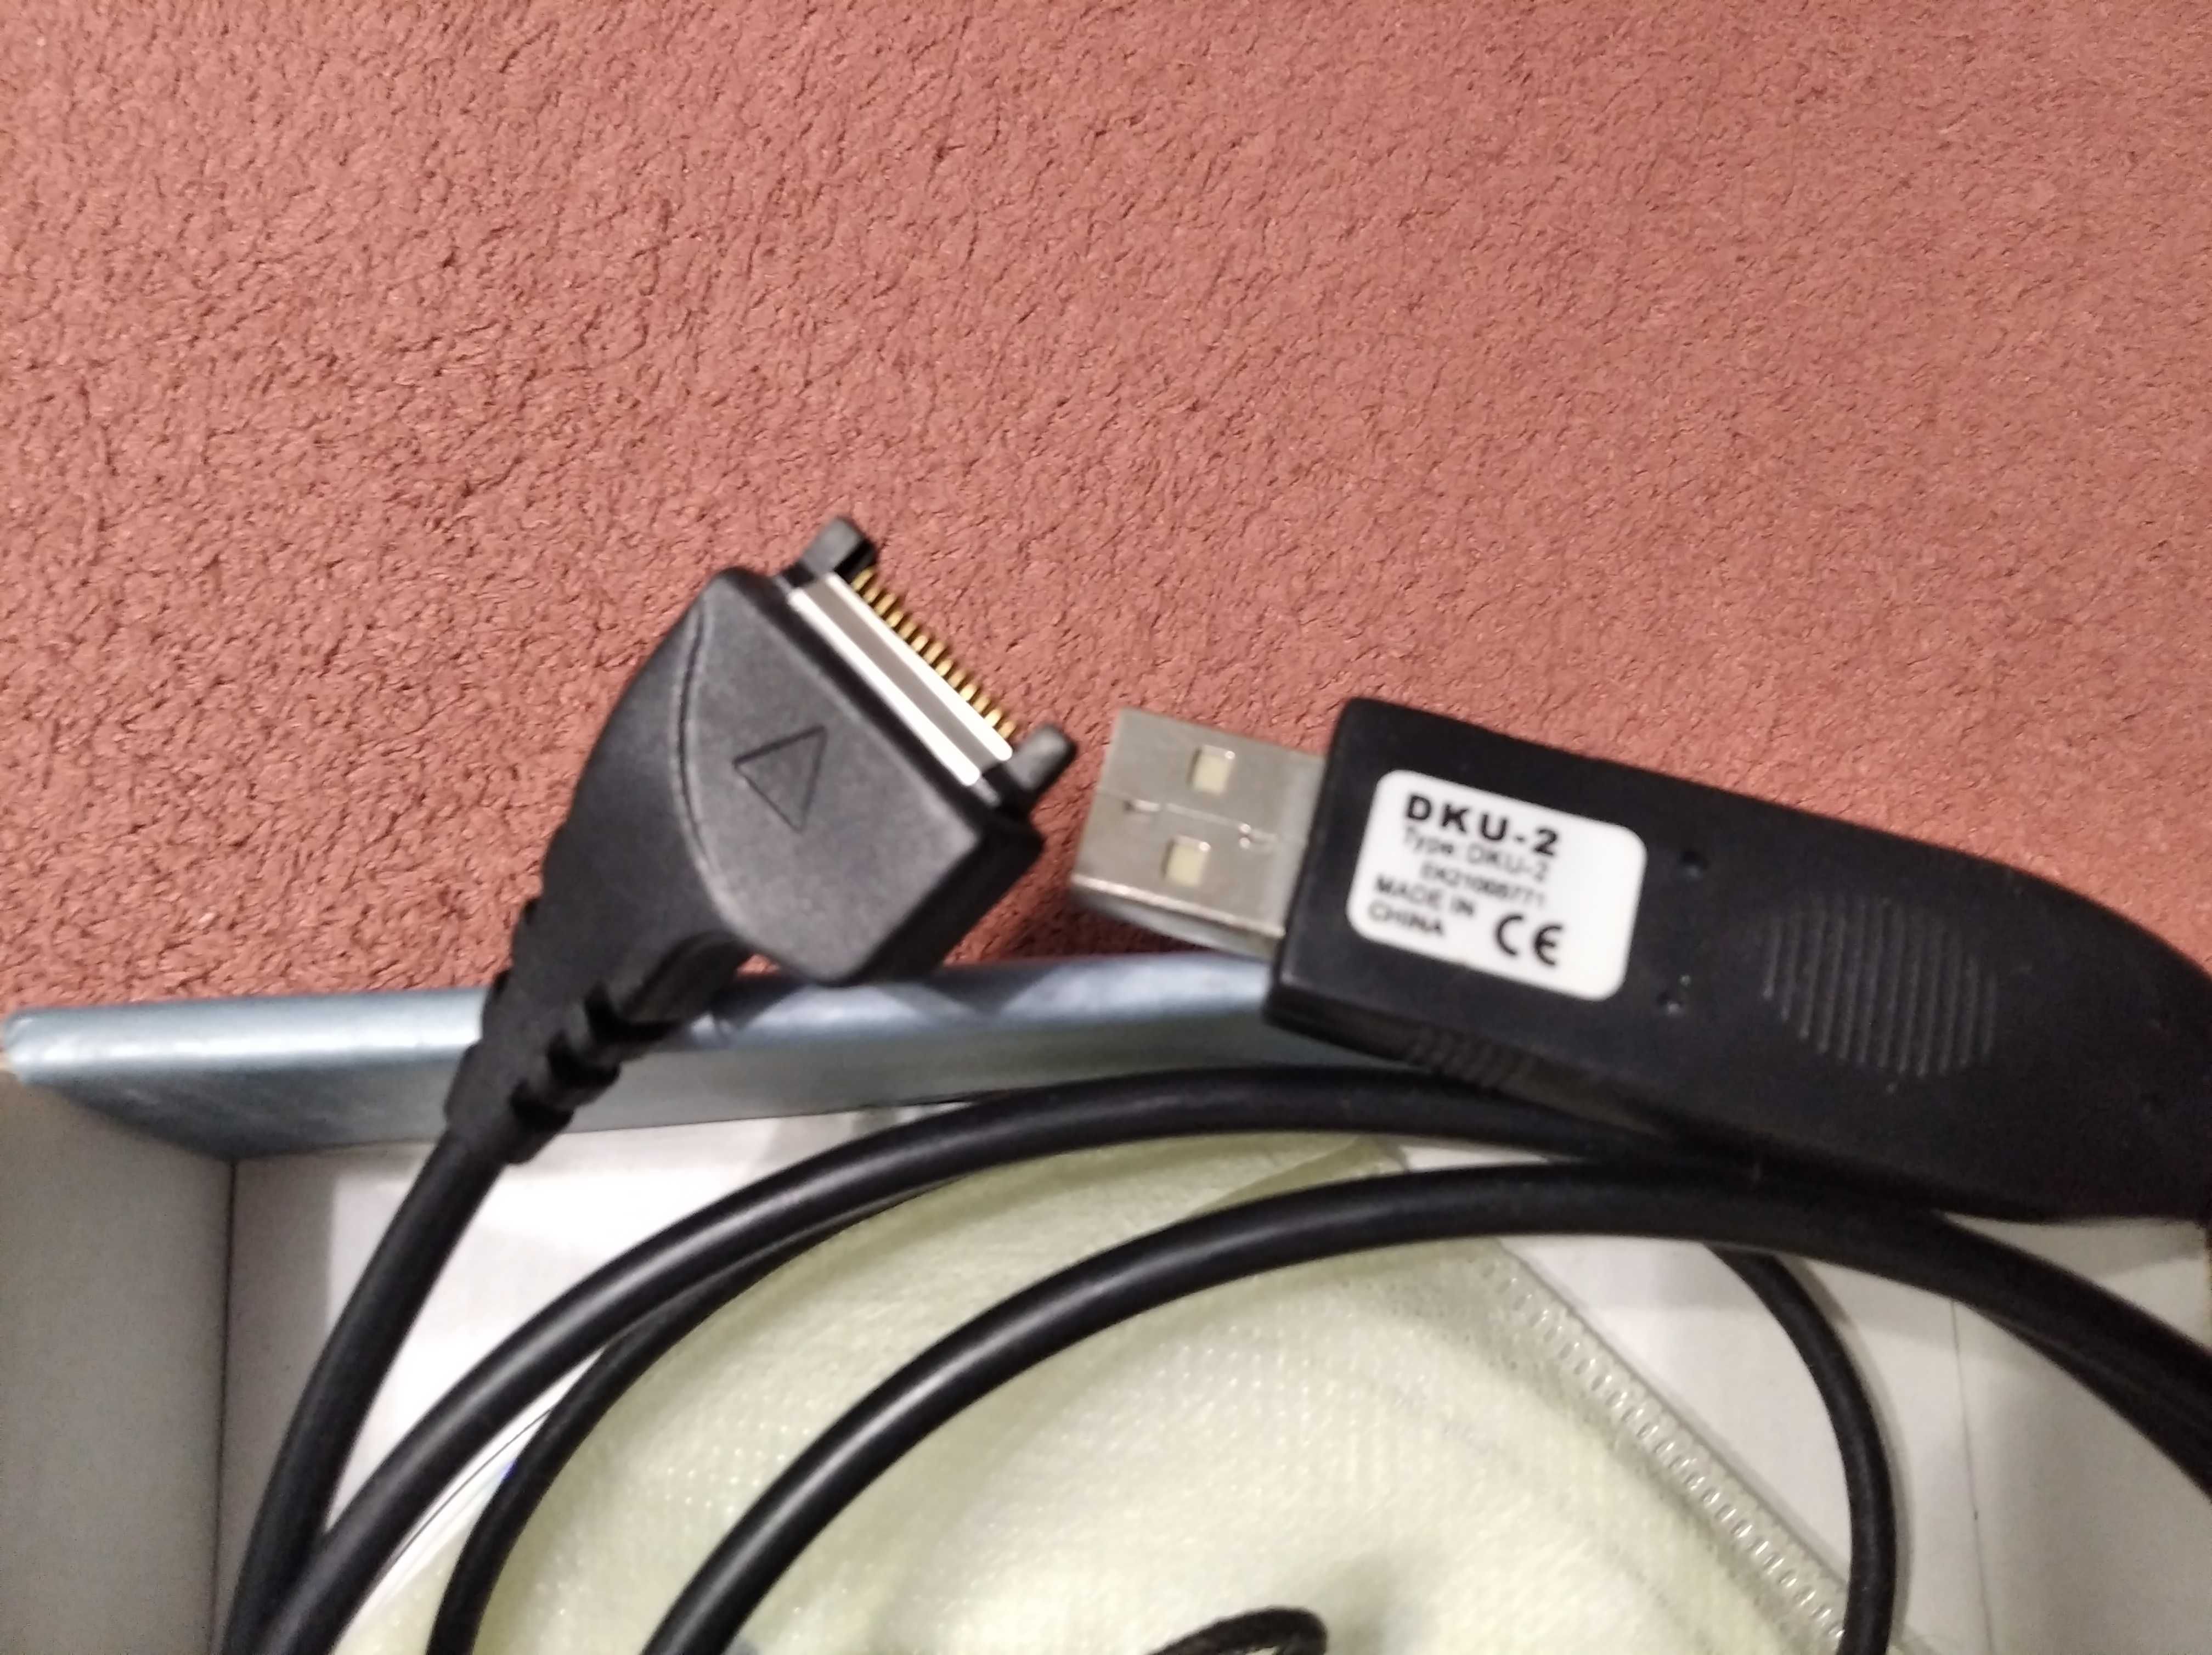 USB кабель Nokia DKU-2